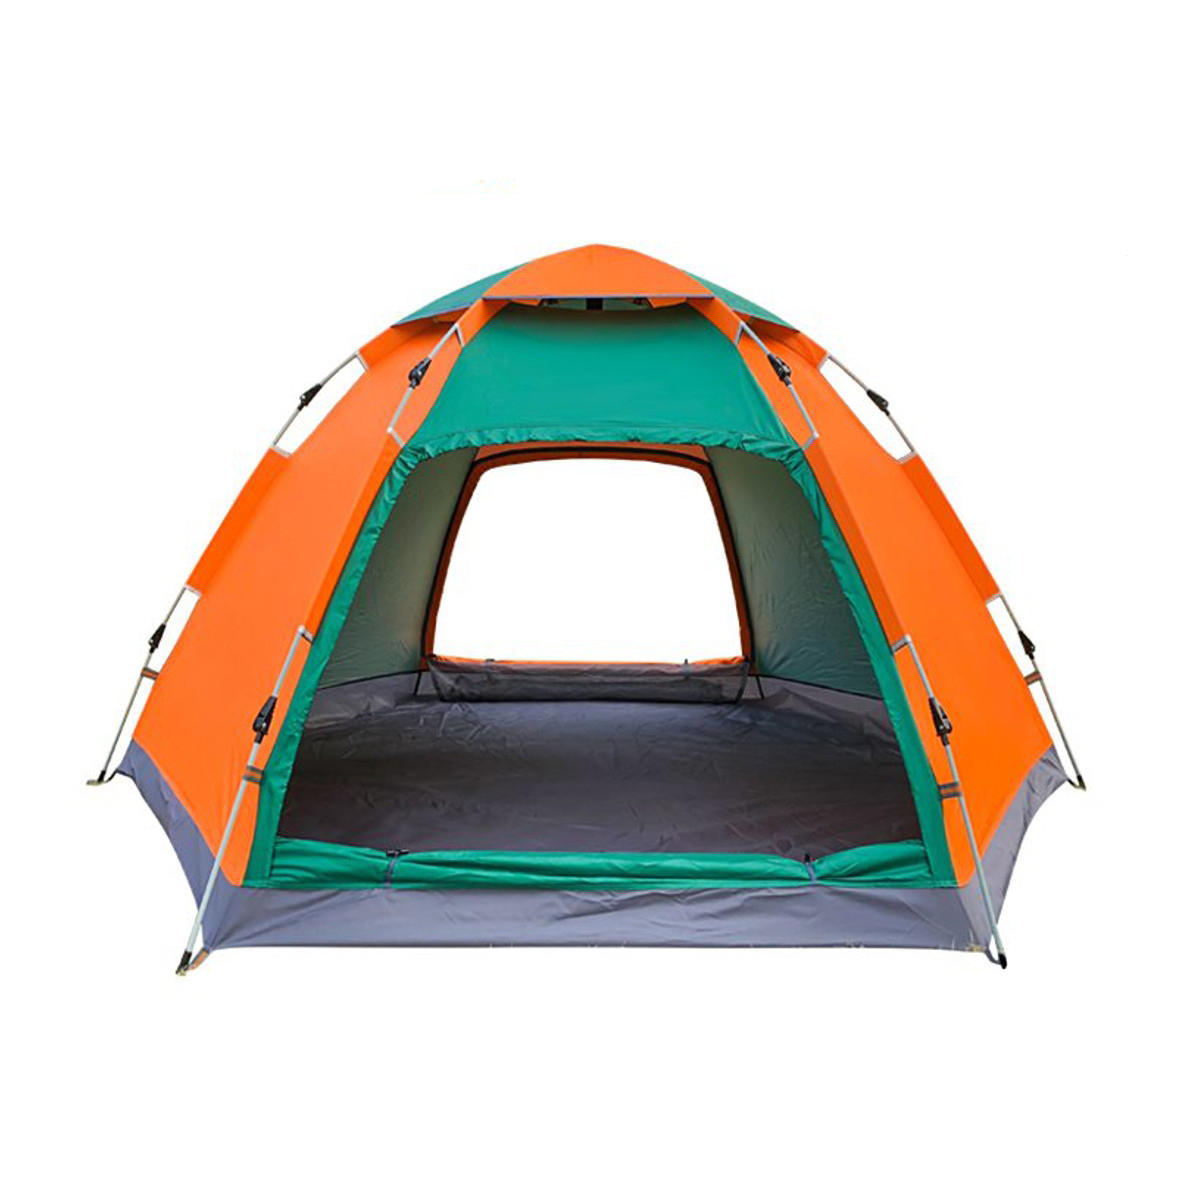 Tienda de camping para 3-4 personas al aire libre, desplegable automático instantáneo, familia grande impermeable y con sombra para protección solar